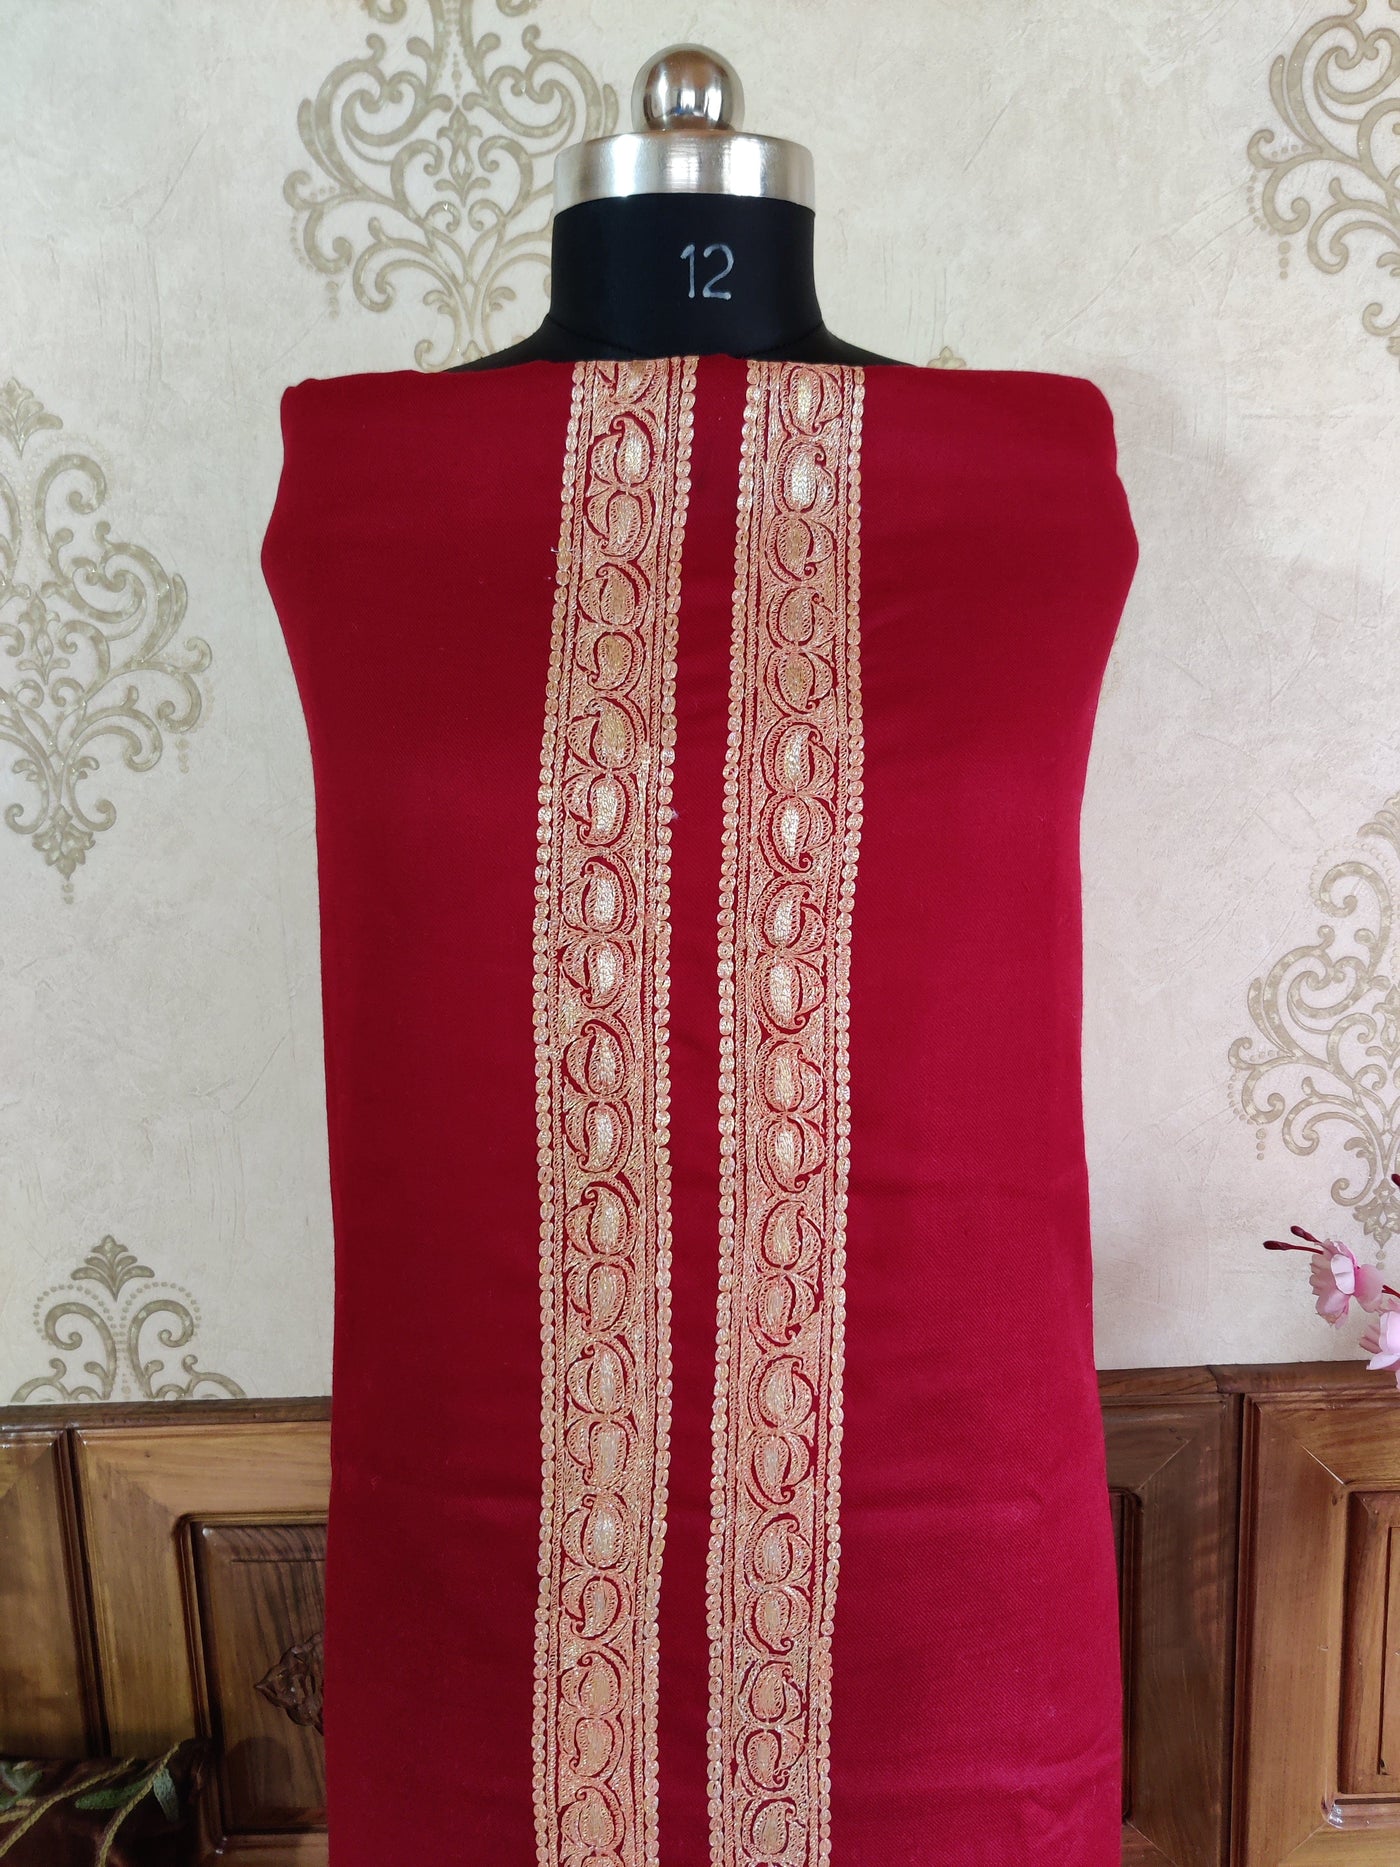 Maroon Kashmiri Suit Woollen With Golden Tilla Embroidery  (3 pcs) Woolen Suit KashmKari Blue Kashmiri Woollen Suit With Tilla Embroidery jaal design (3 pcs).  Kashmiri Suit online